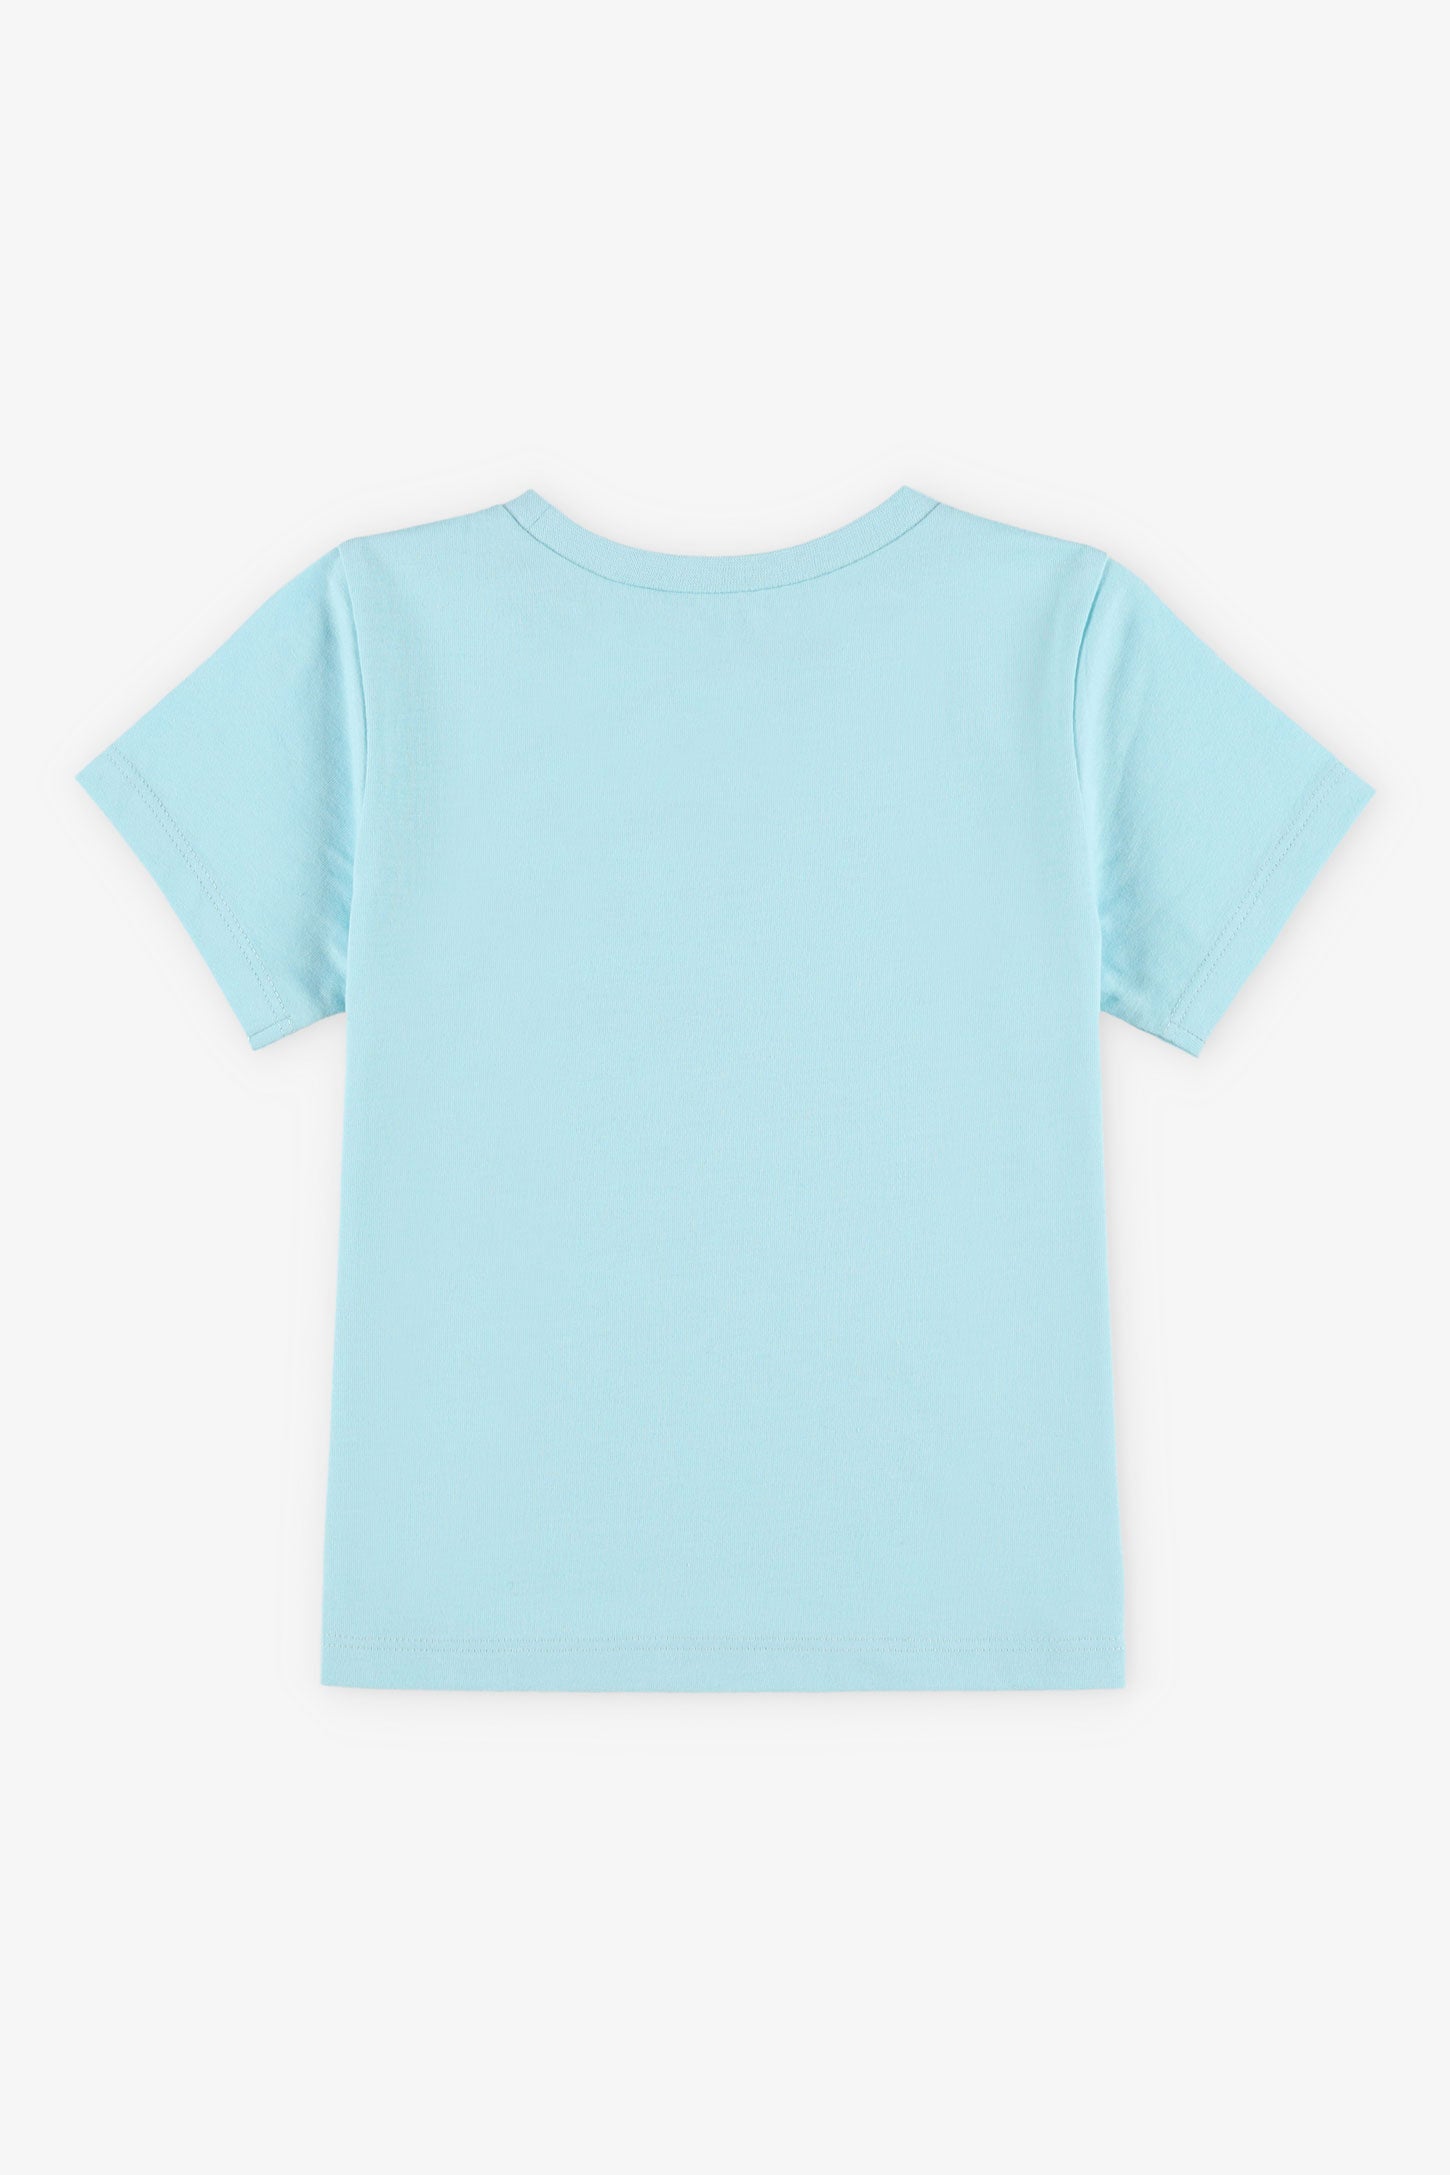 T-shirt col rond à imprimé coton, 2T-3T, 2/15$ - Bébé garçon && BLEU PALE